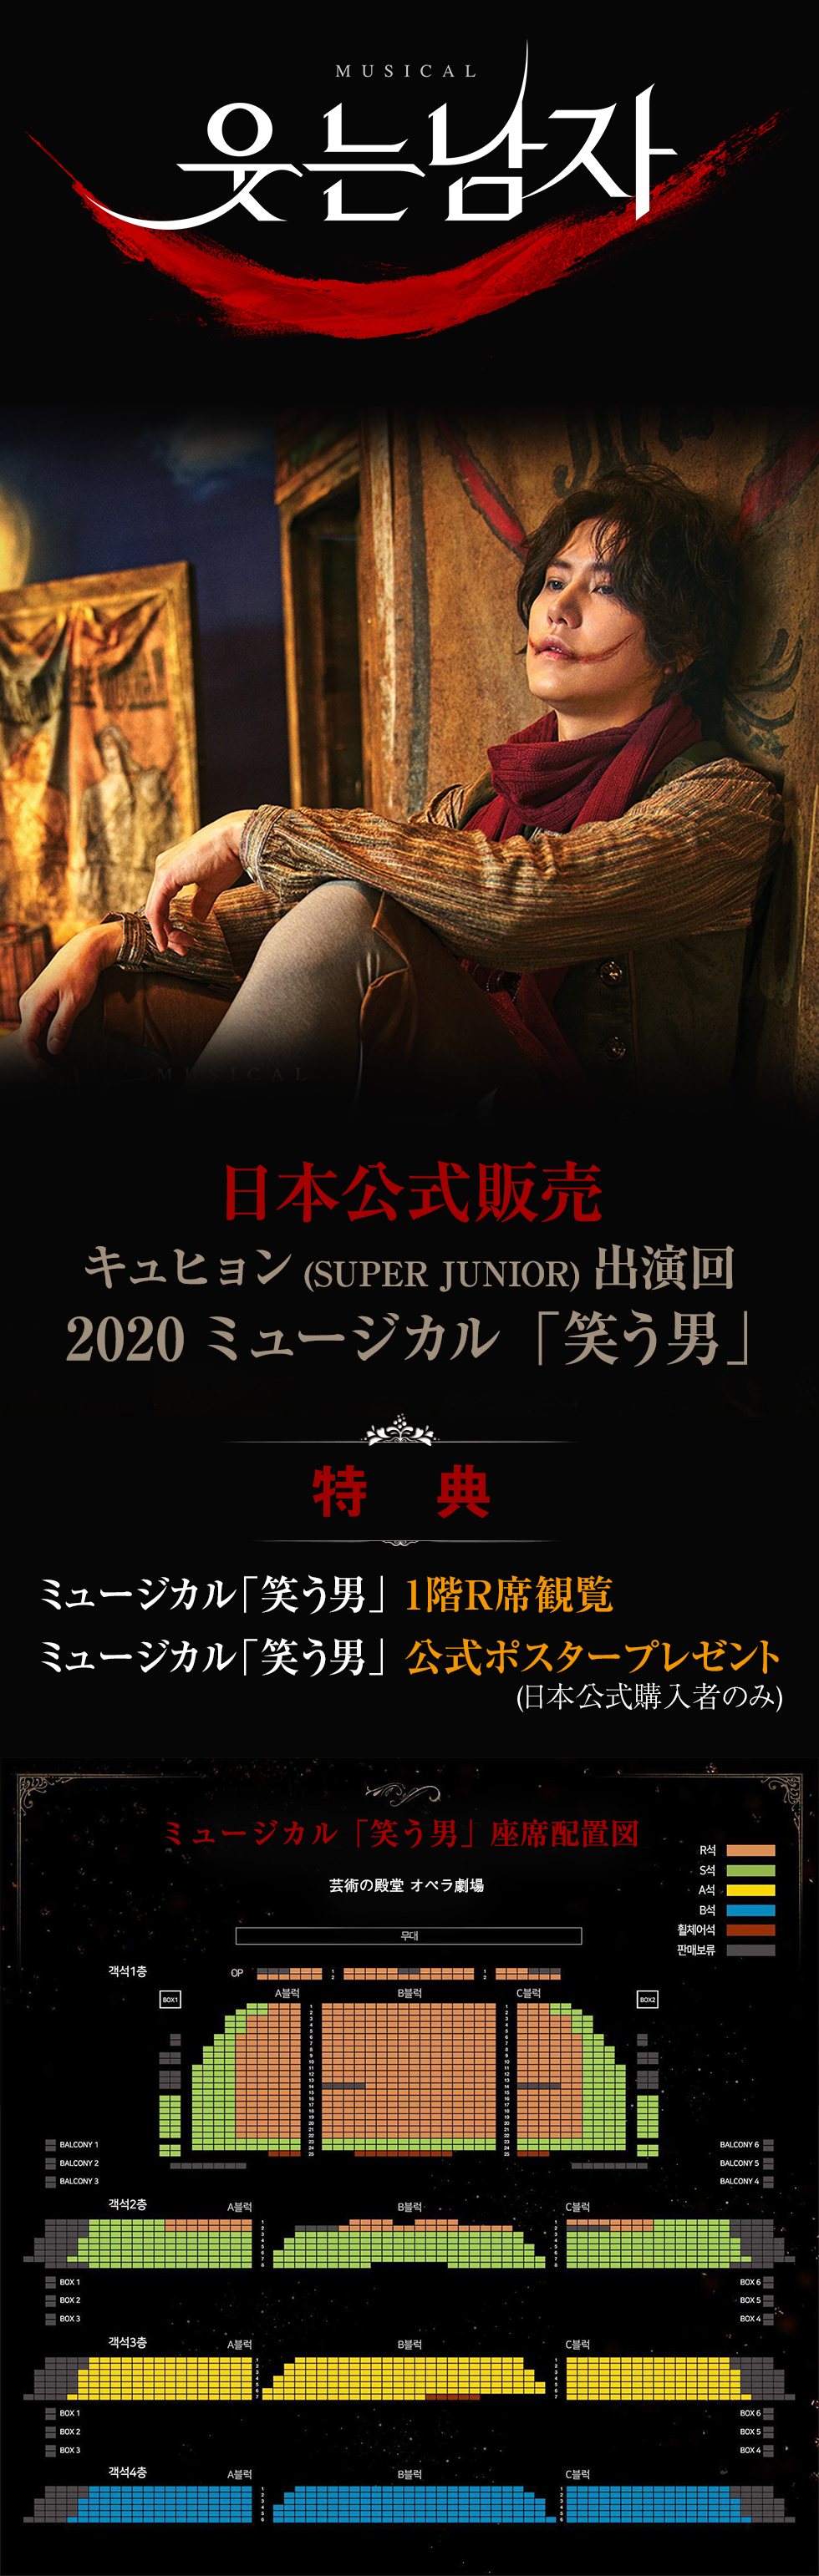 キュヒョン(SUPER JUNIOR)出演回 2020 ミュージカル「笑う男」 - 1階R席観覧